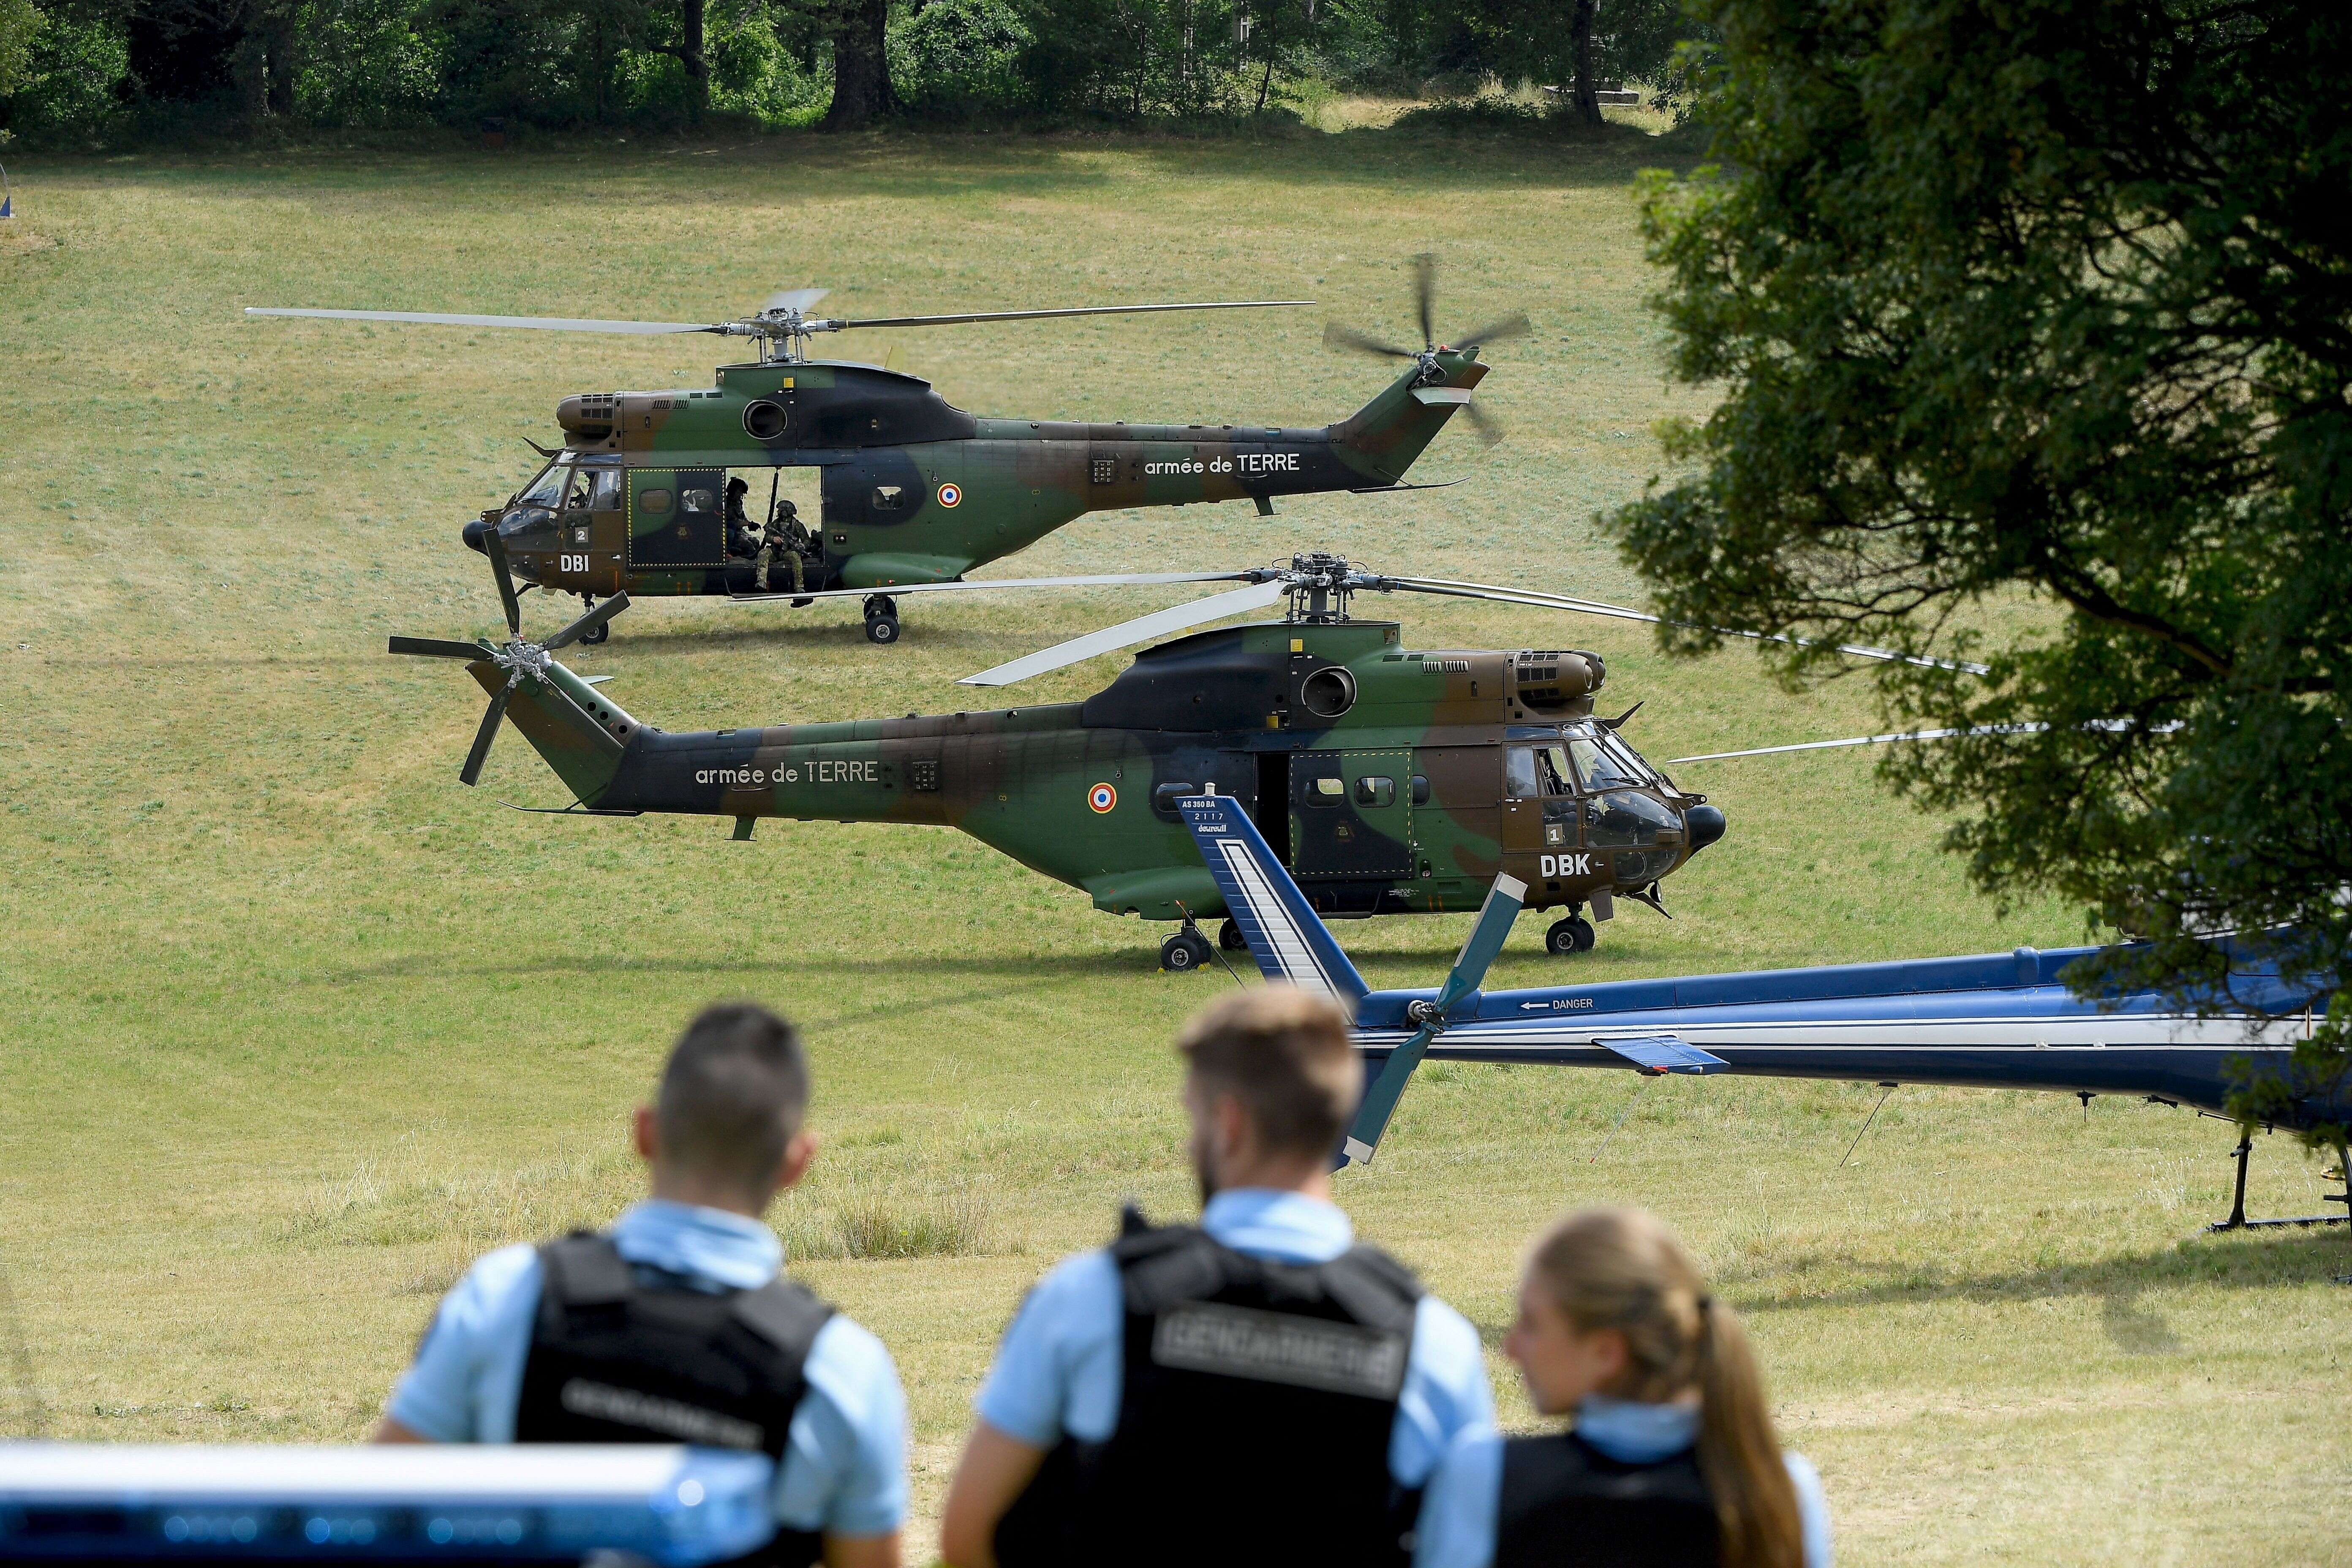 Des gendarmes devant des hélicoptères de l'armée de terre dans un champ de Gréolières, dans le Var, pour retrouver le suspect d'un meurtre le 19 juillet 2021.